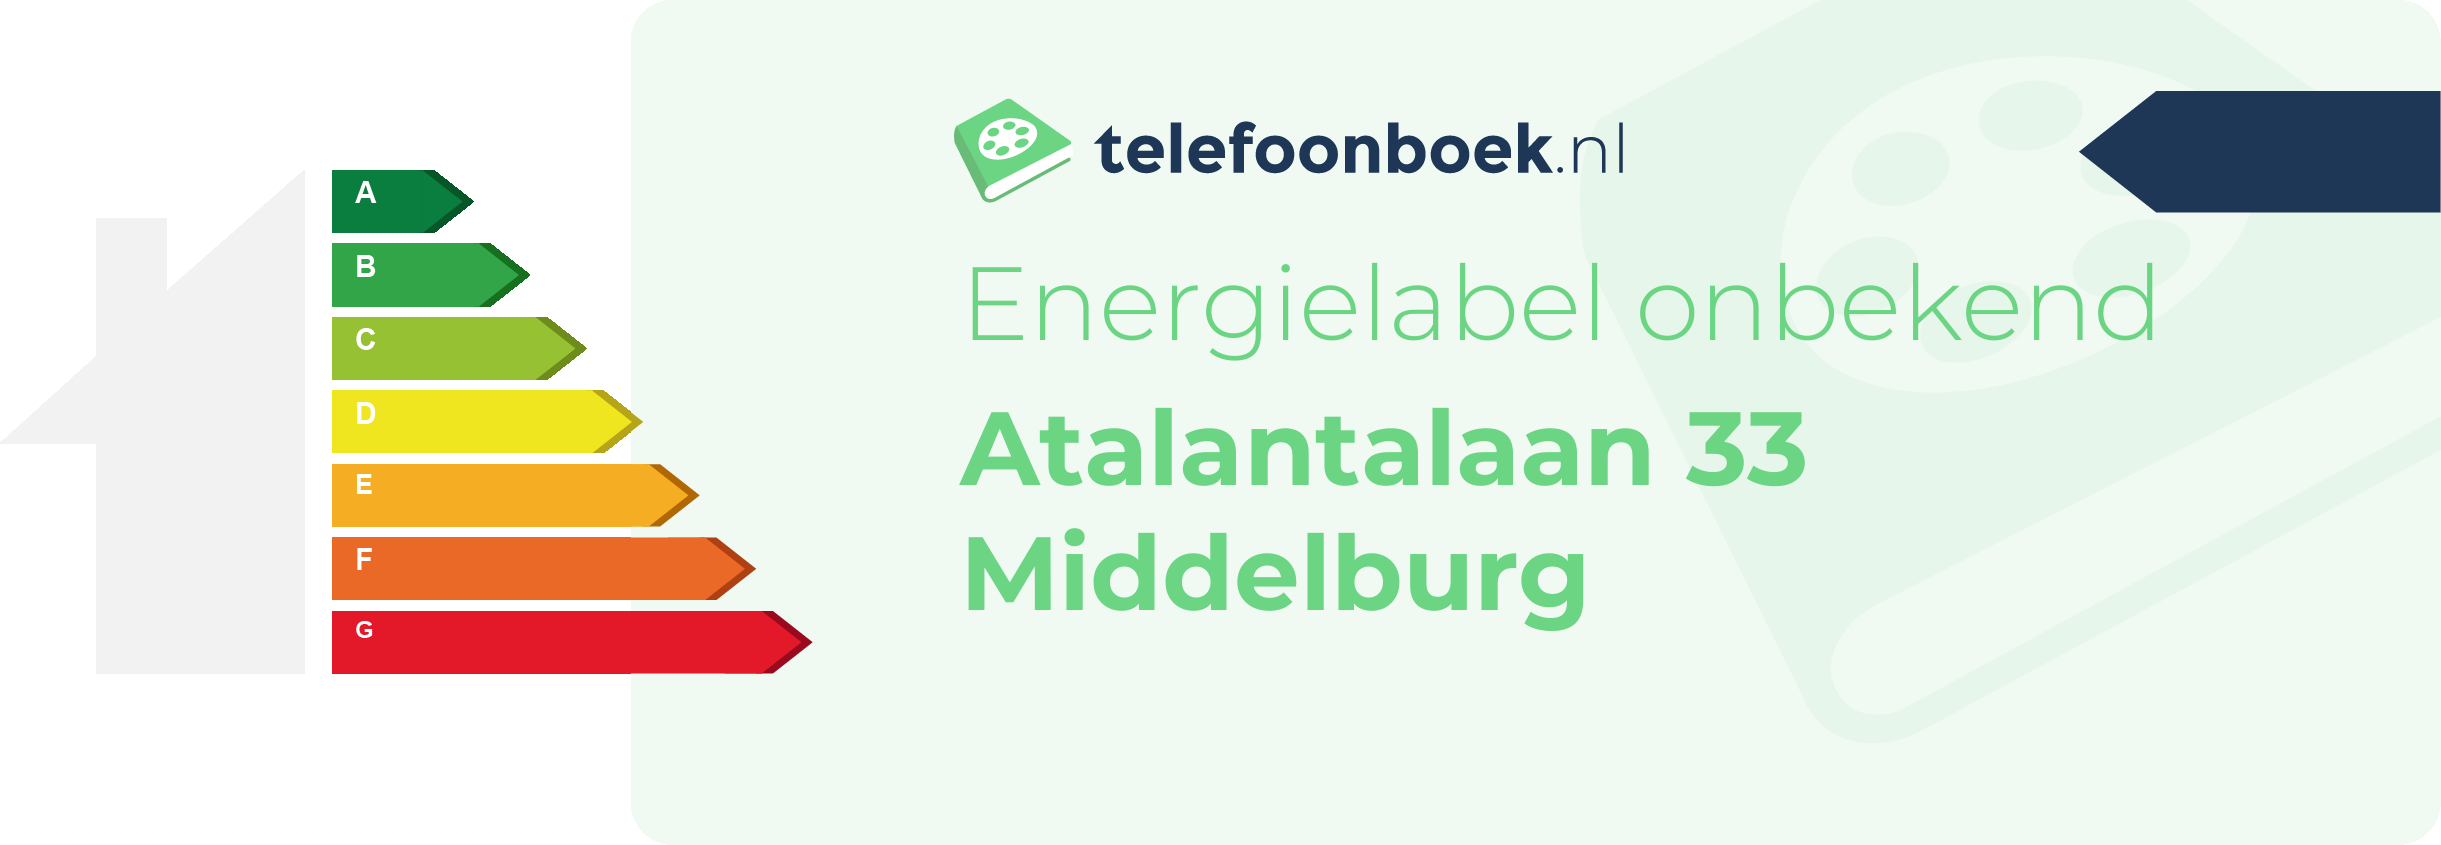 Energielabel Atalantalaan 33 Middelburg